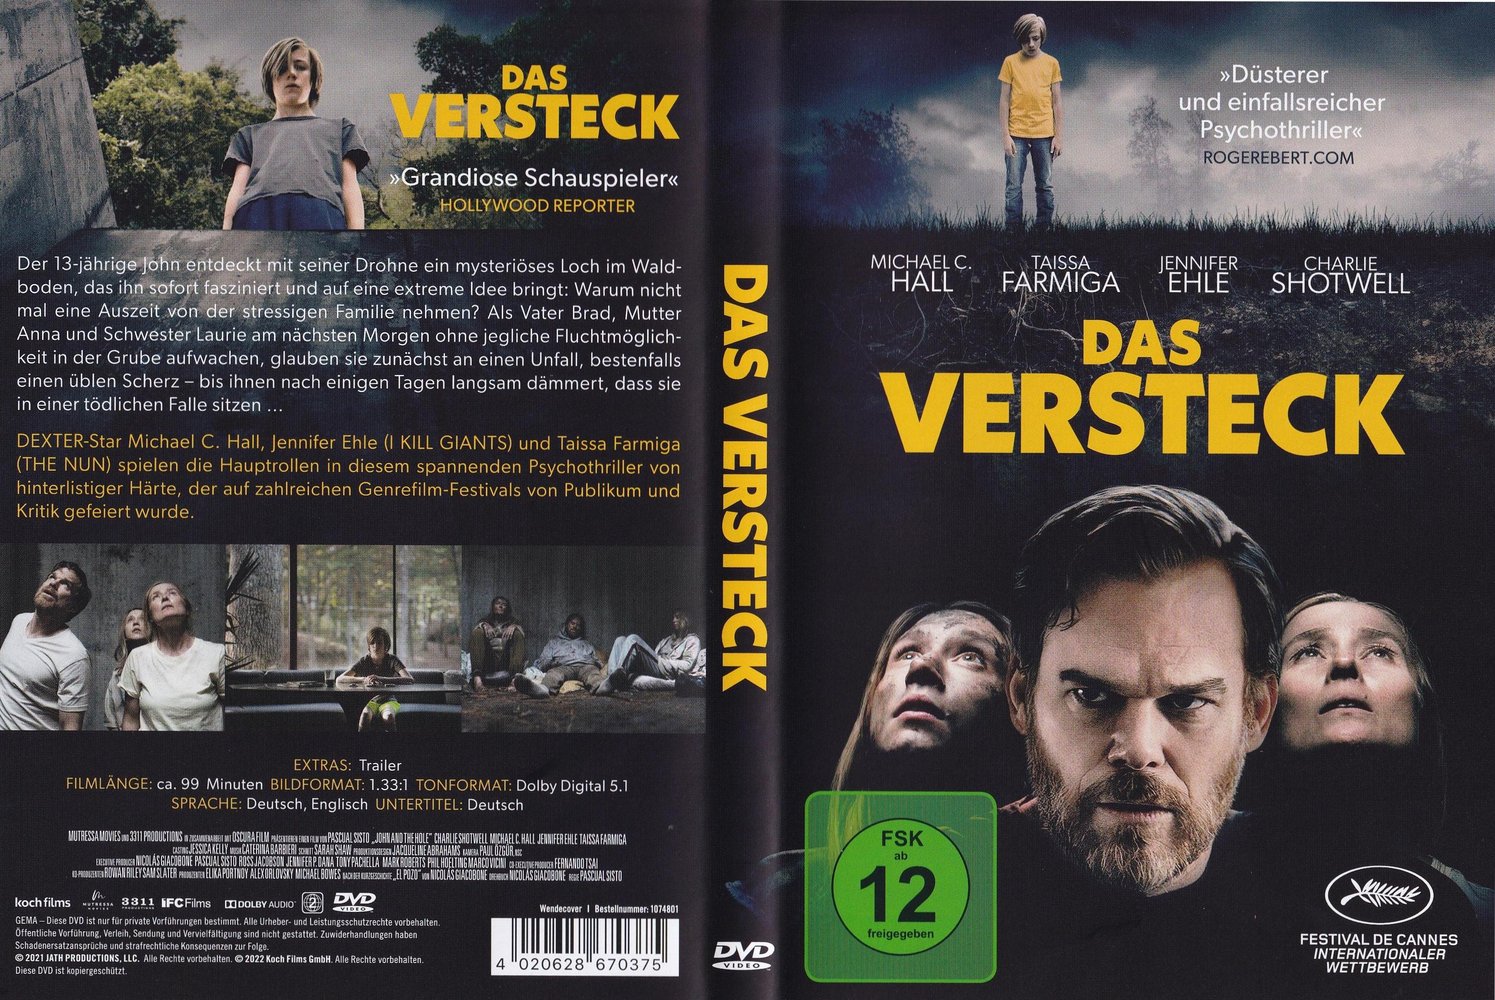 Das Versteck: DVD oder Blu-ray leihen - VIDEOBUSTER